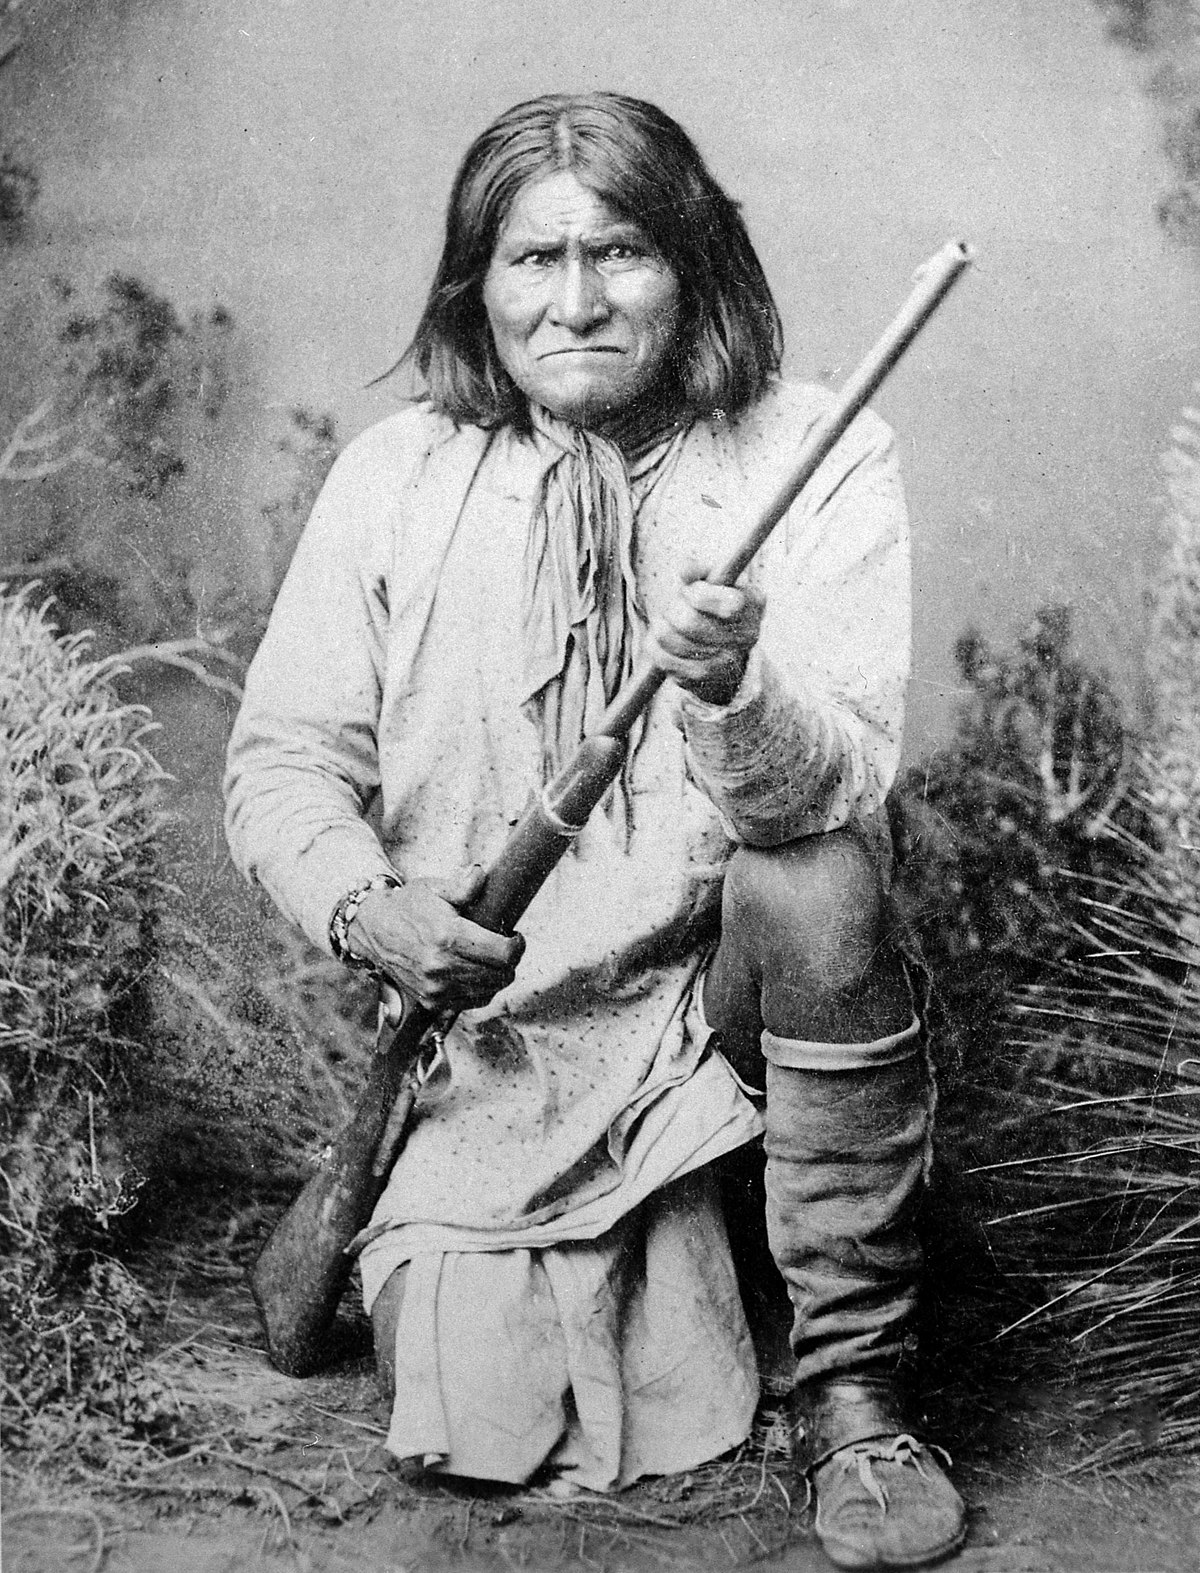  Geronimo'nun biyografisi ve tarihçesi